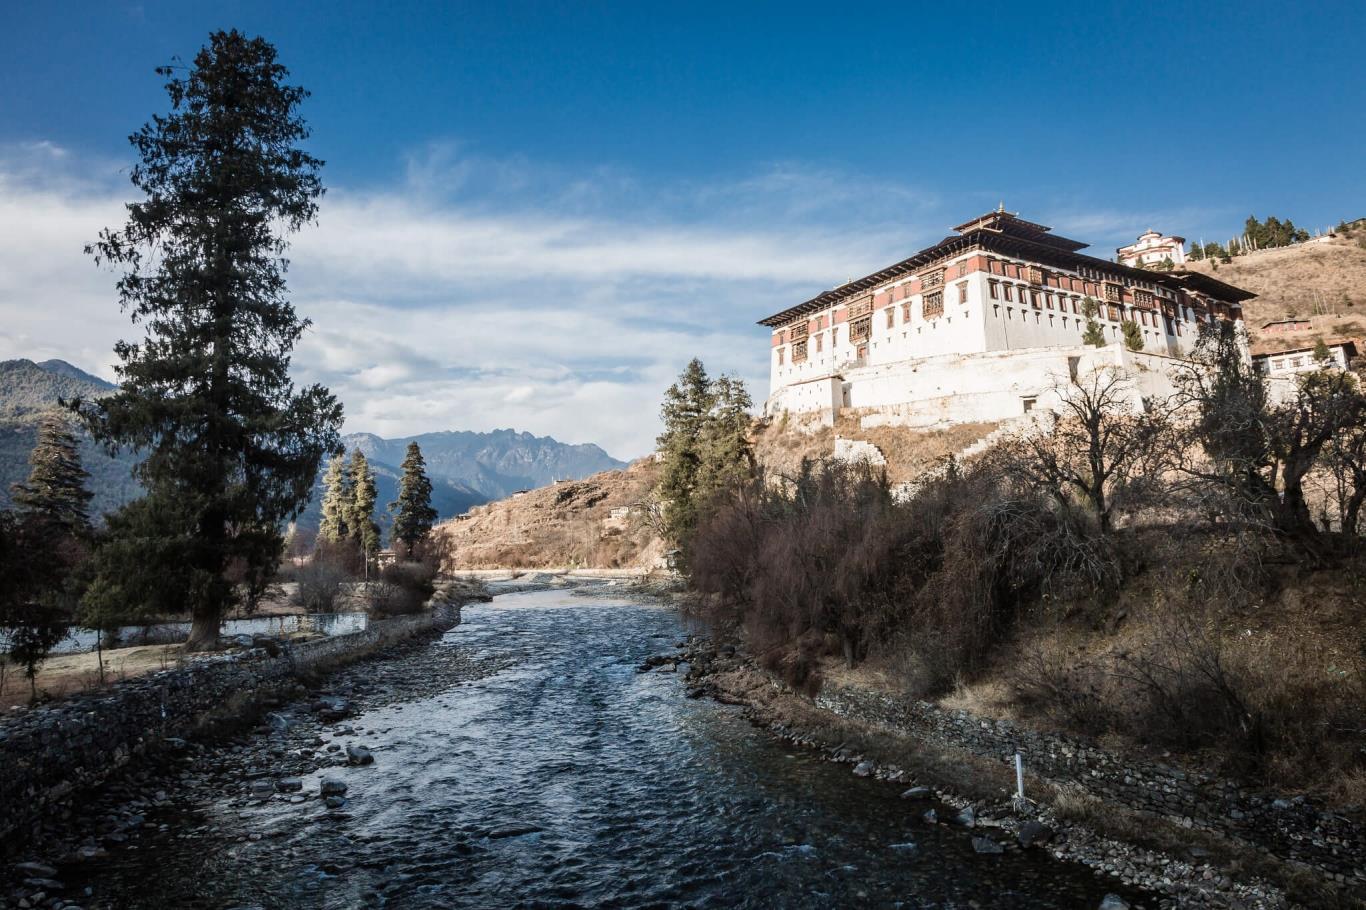 Kiến trúc ở Bhutan chủ yếu là Dzong - pháo đài